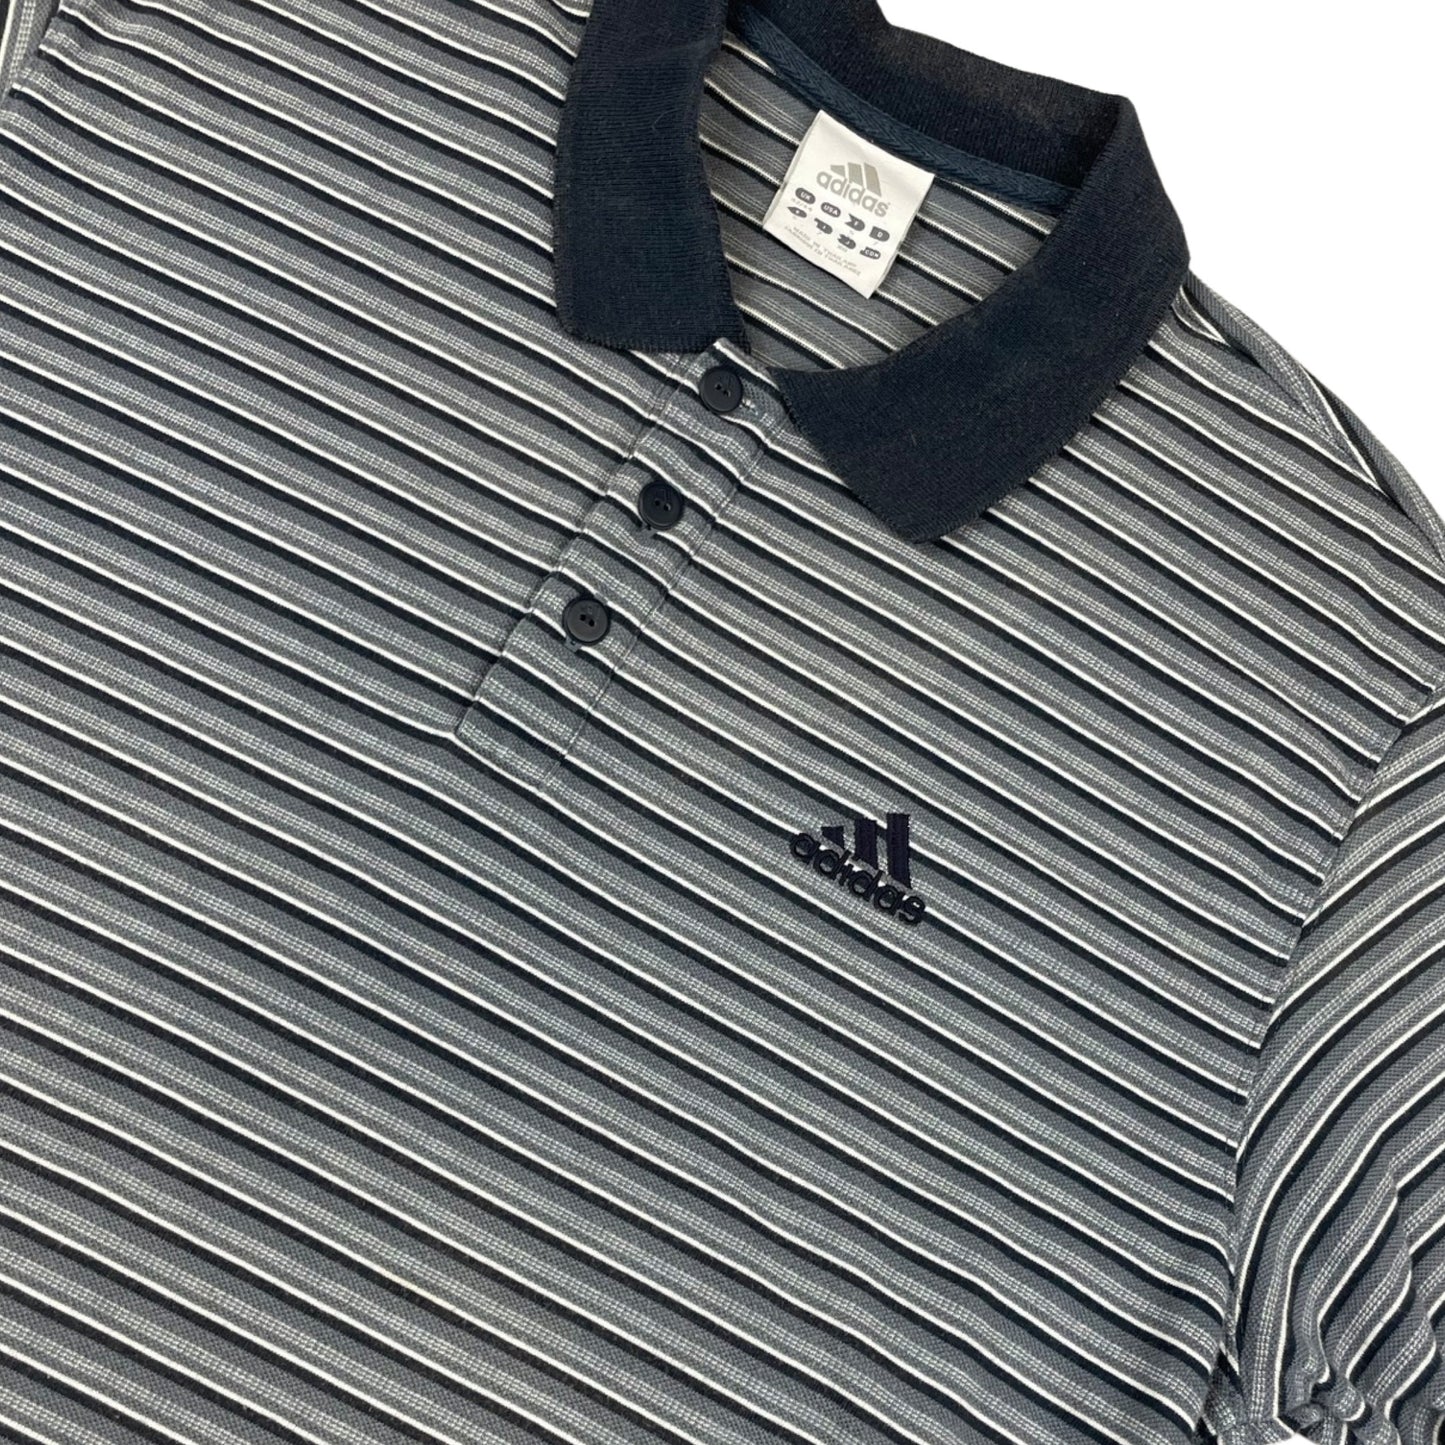 Vintage Y2K Adidas Grey Striped Polo Shirt M